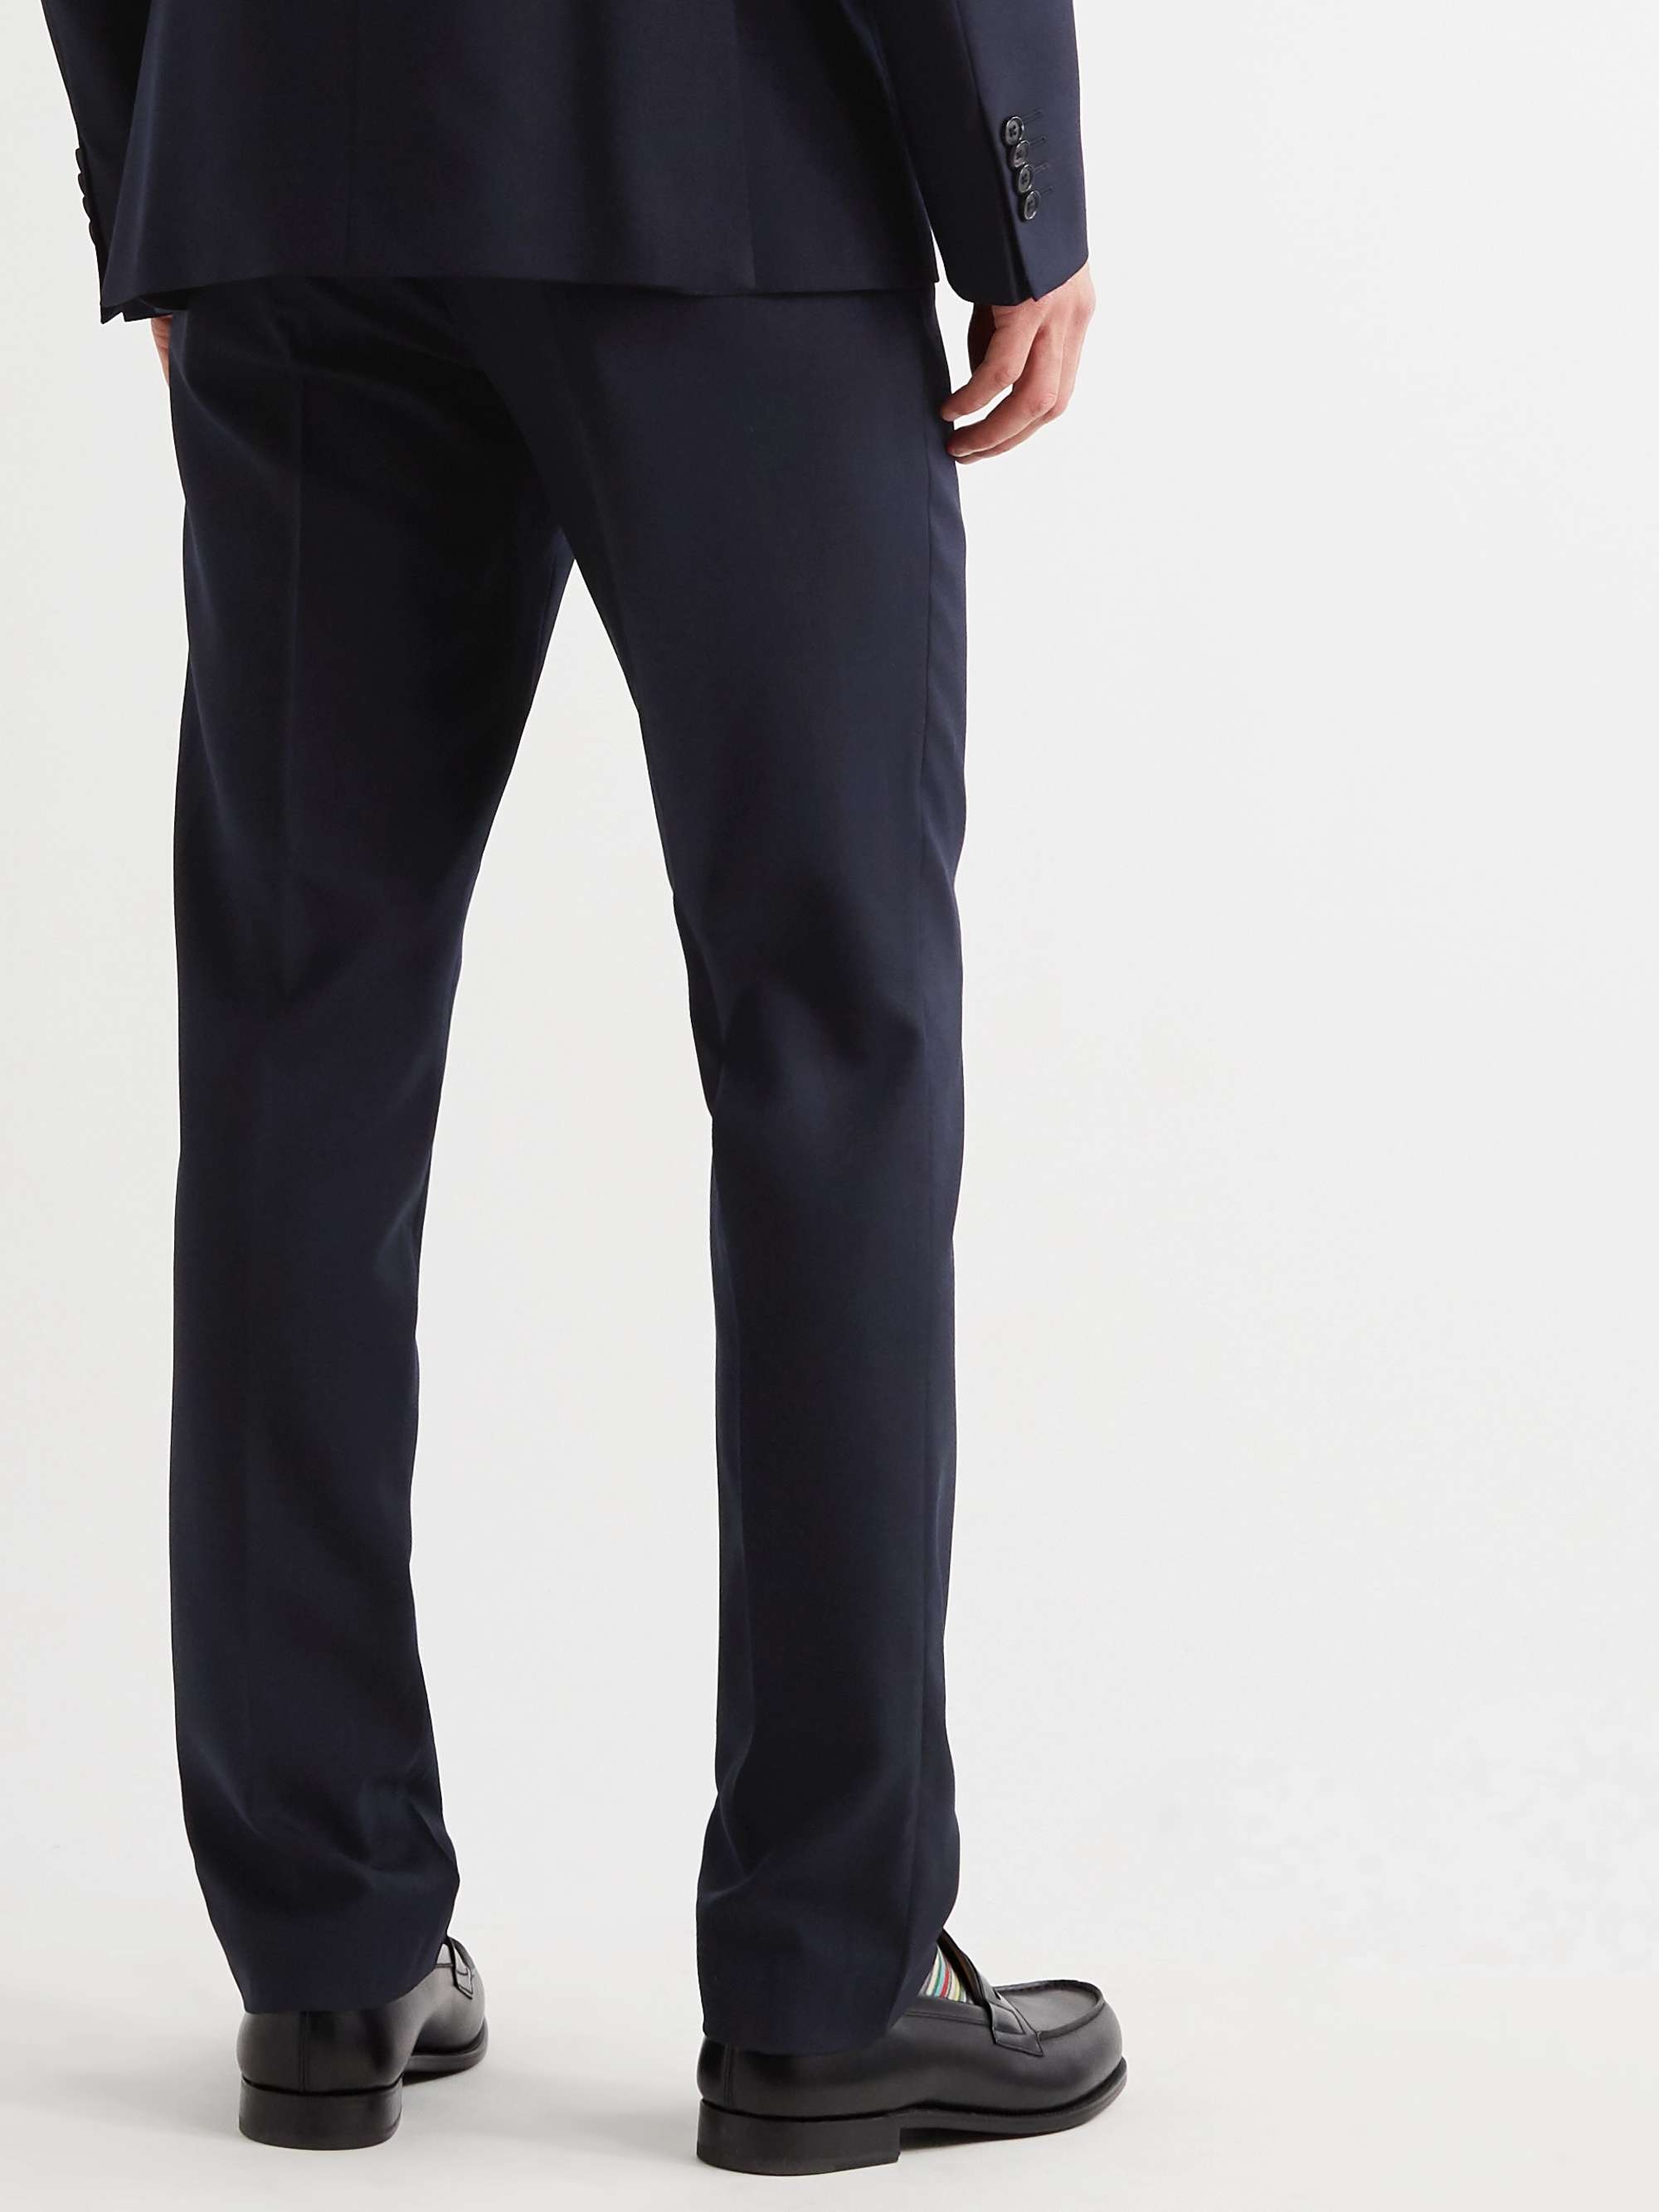 PAUL SMITH Soho Slim-Fit Cotton Suit Trousers for Men | MR PORTER